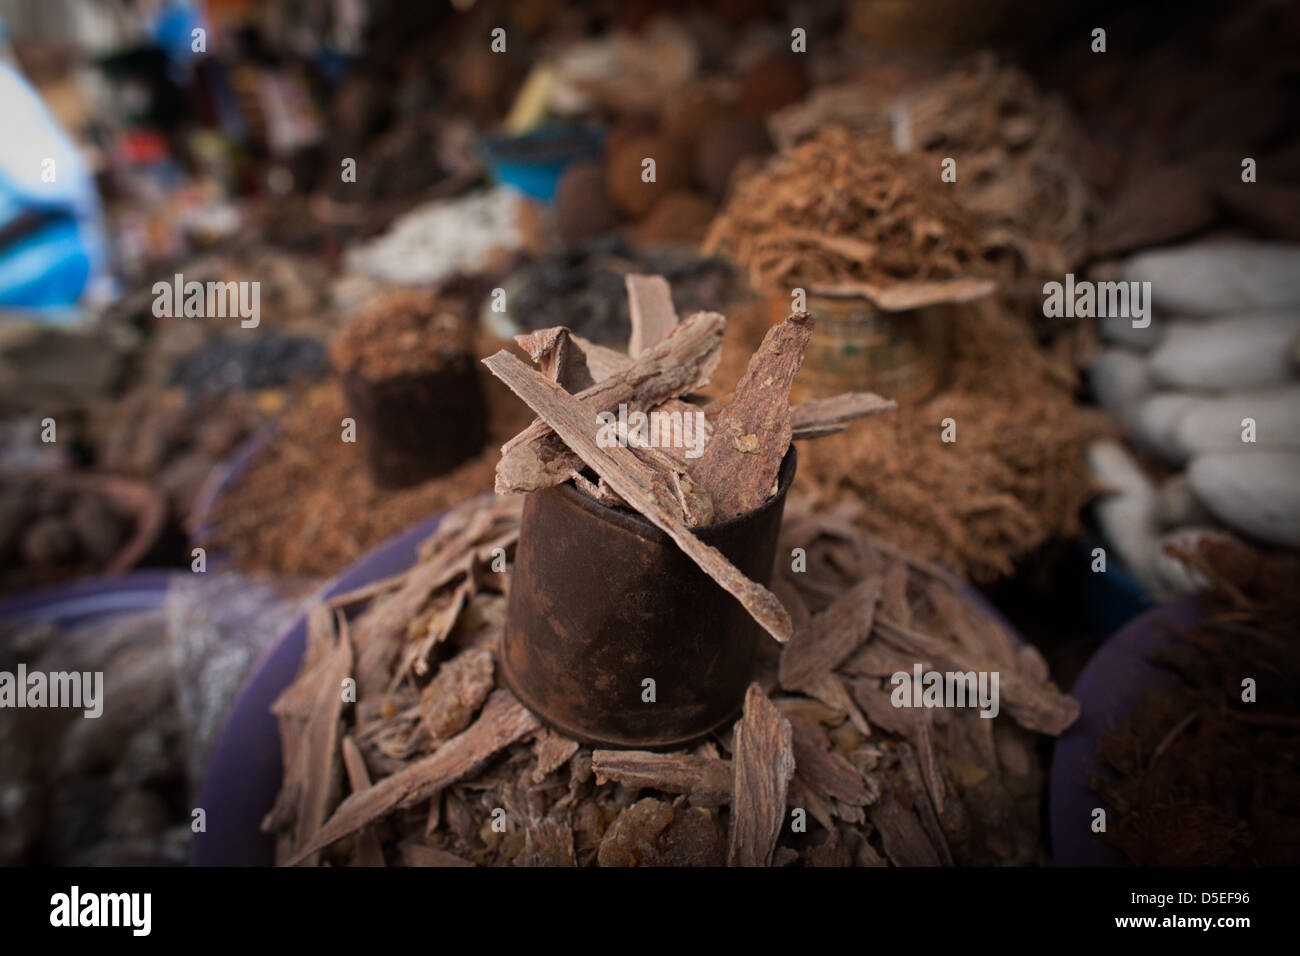 Diversi medicinali tradizionali, tra cui corteccia di albero, nel mercato del legname, Accra, Ghana. Foto Stock